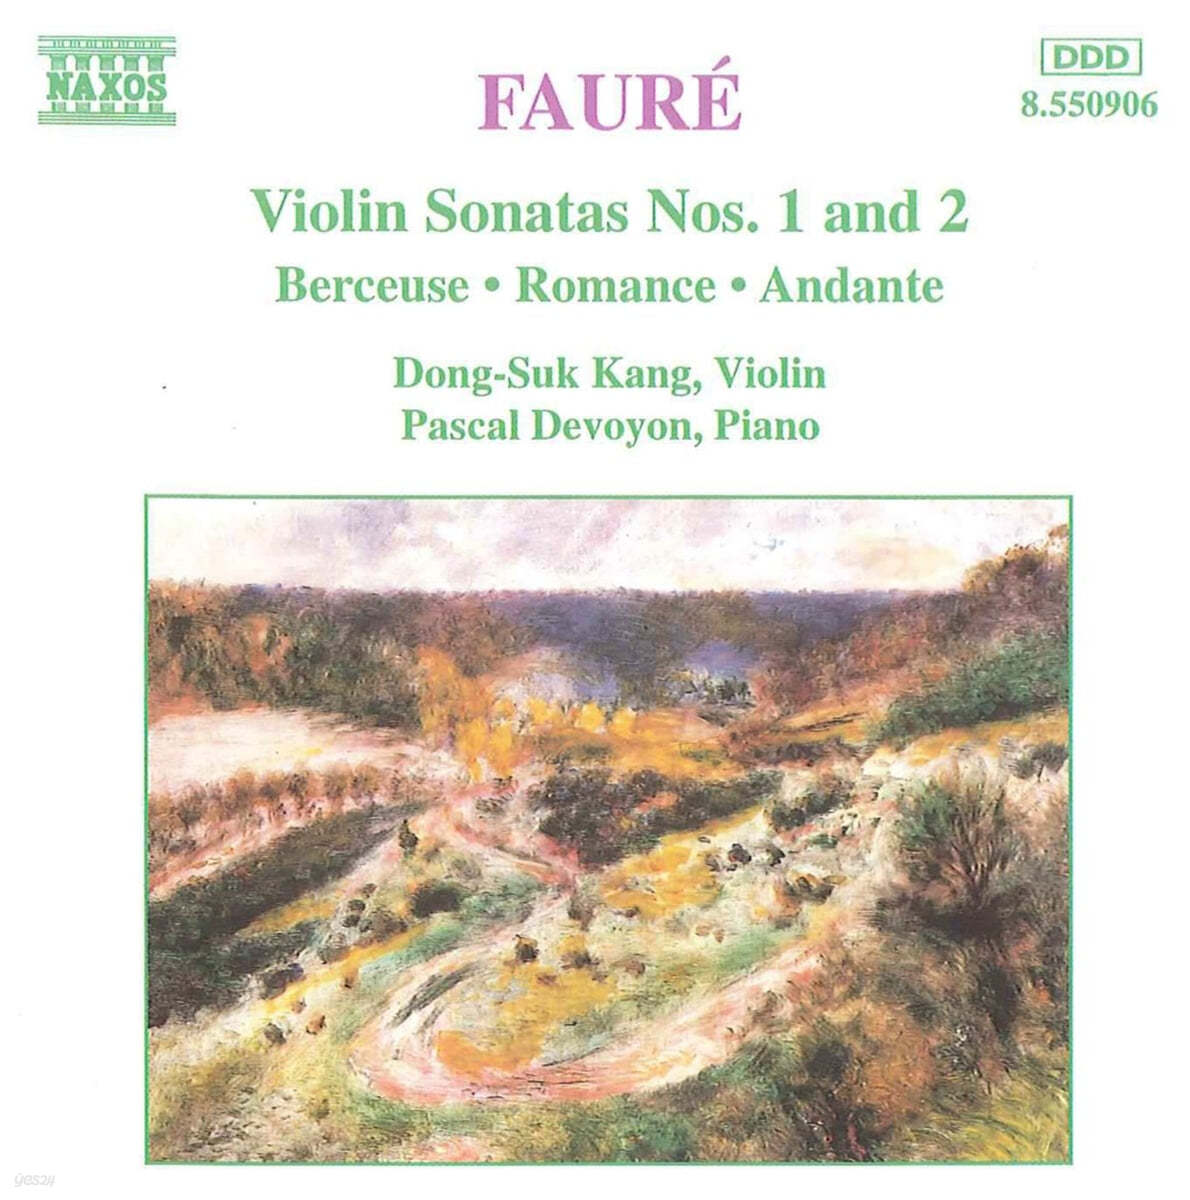 강동석 (Dong-Suk Kang) - 포레: 바이올린 소나타 1, 2번 (Faure: Violin Sonatas Op.13, Op.108) 